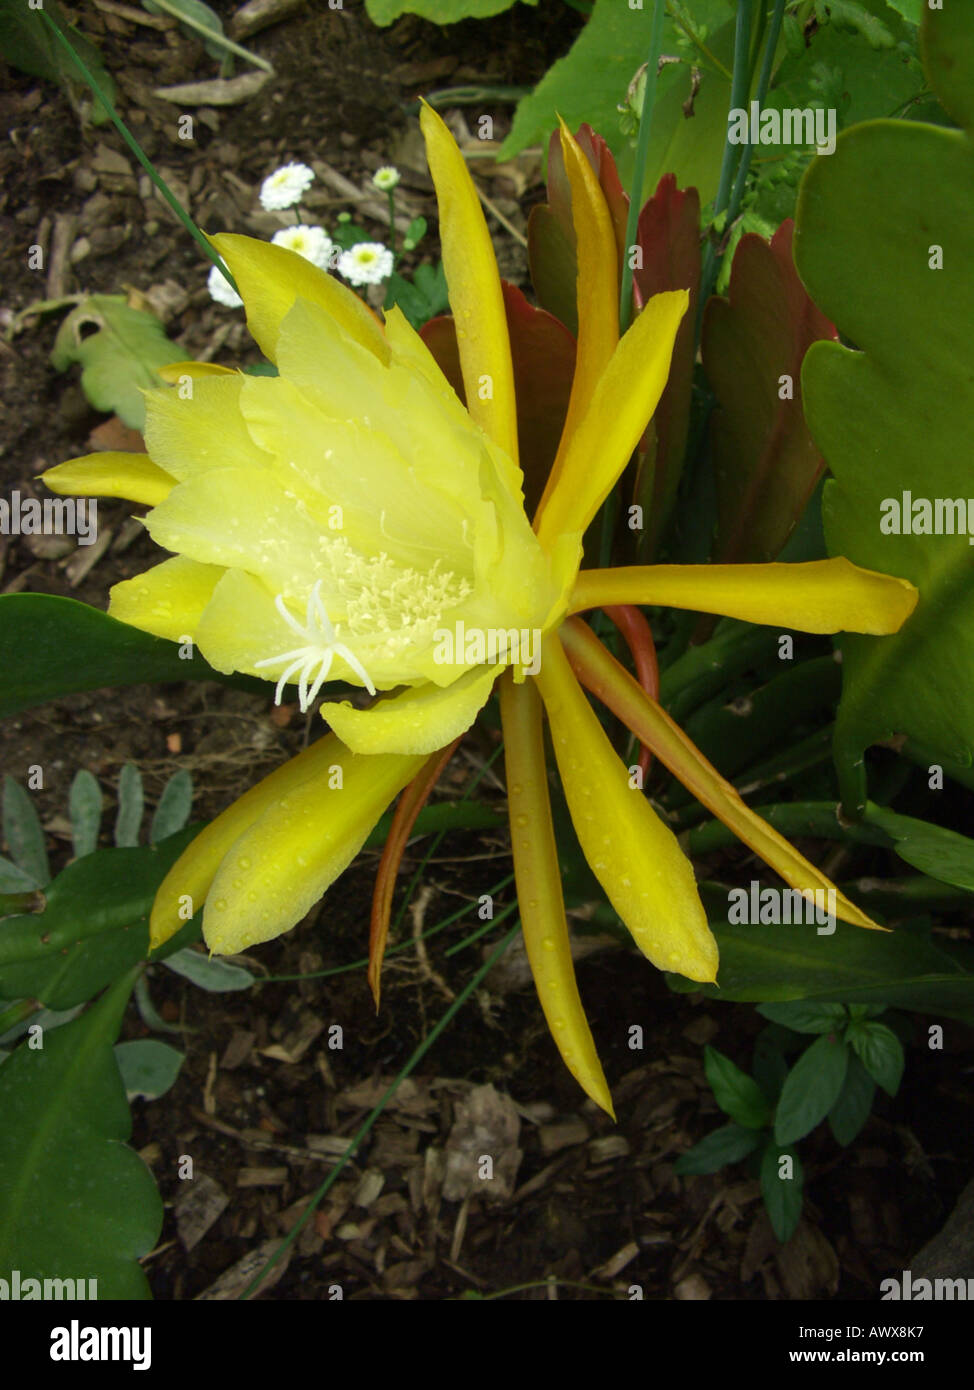 Epiphyllum hybrid (Epiphyllum-Hybride), flower Stock Photo